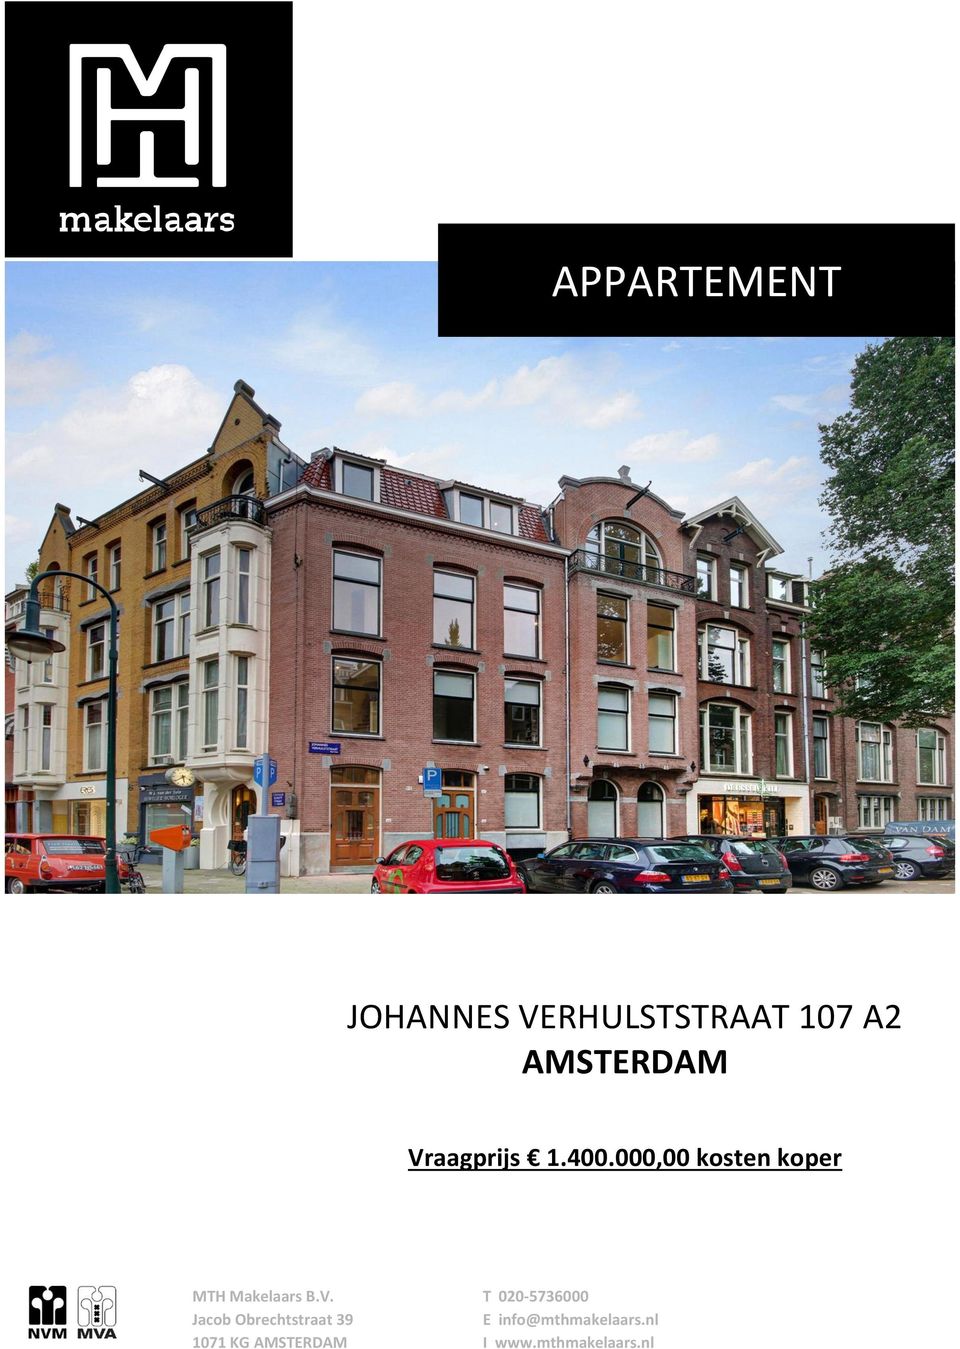 AMSTERDAM Vraagprijs 1.400.